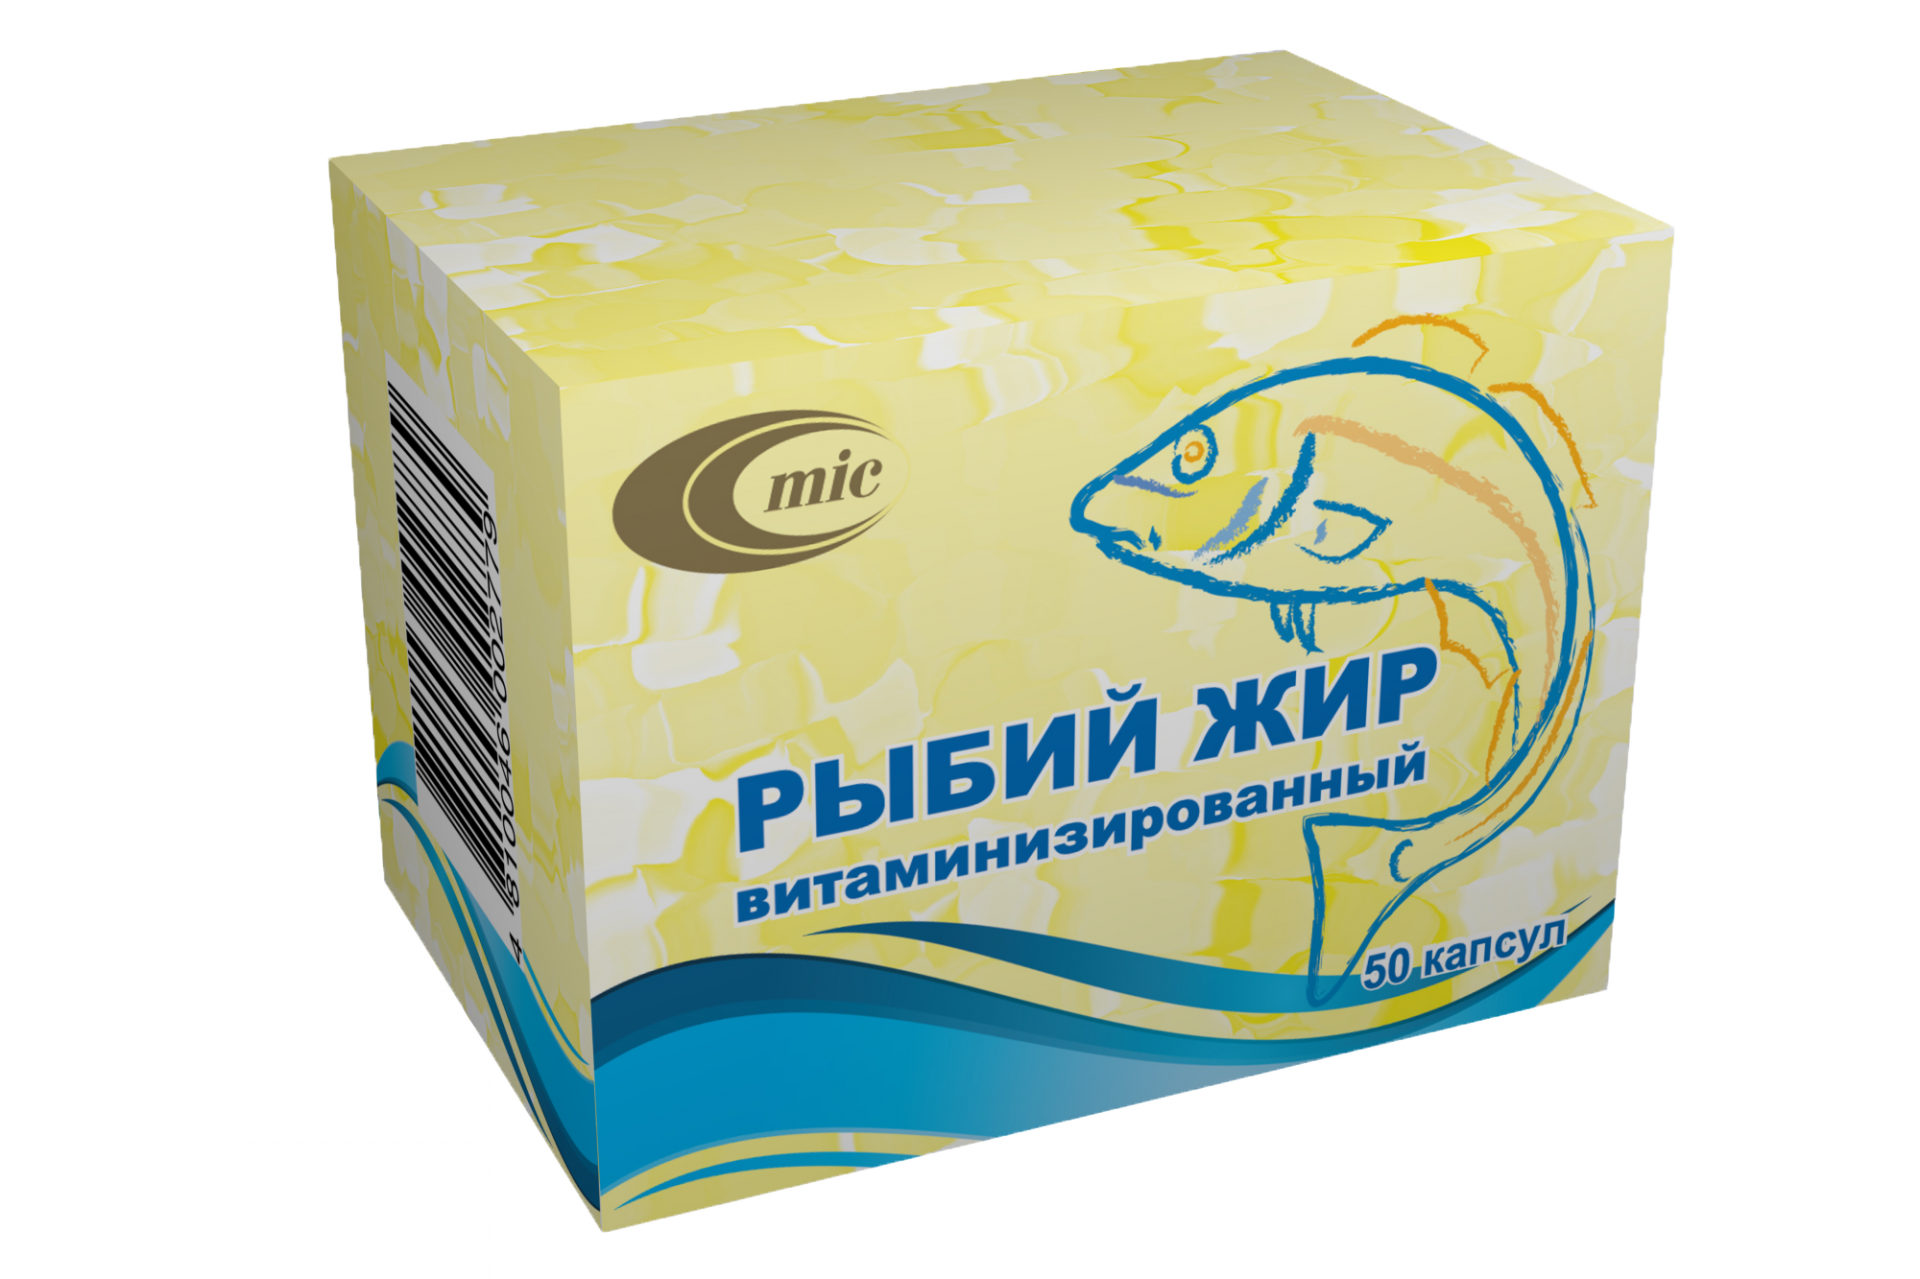 Рыбий жир витаминизированный.png